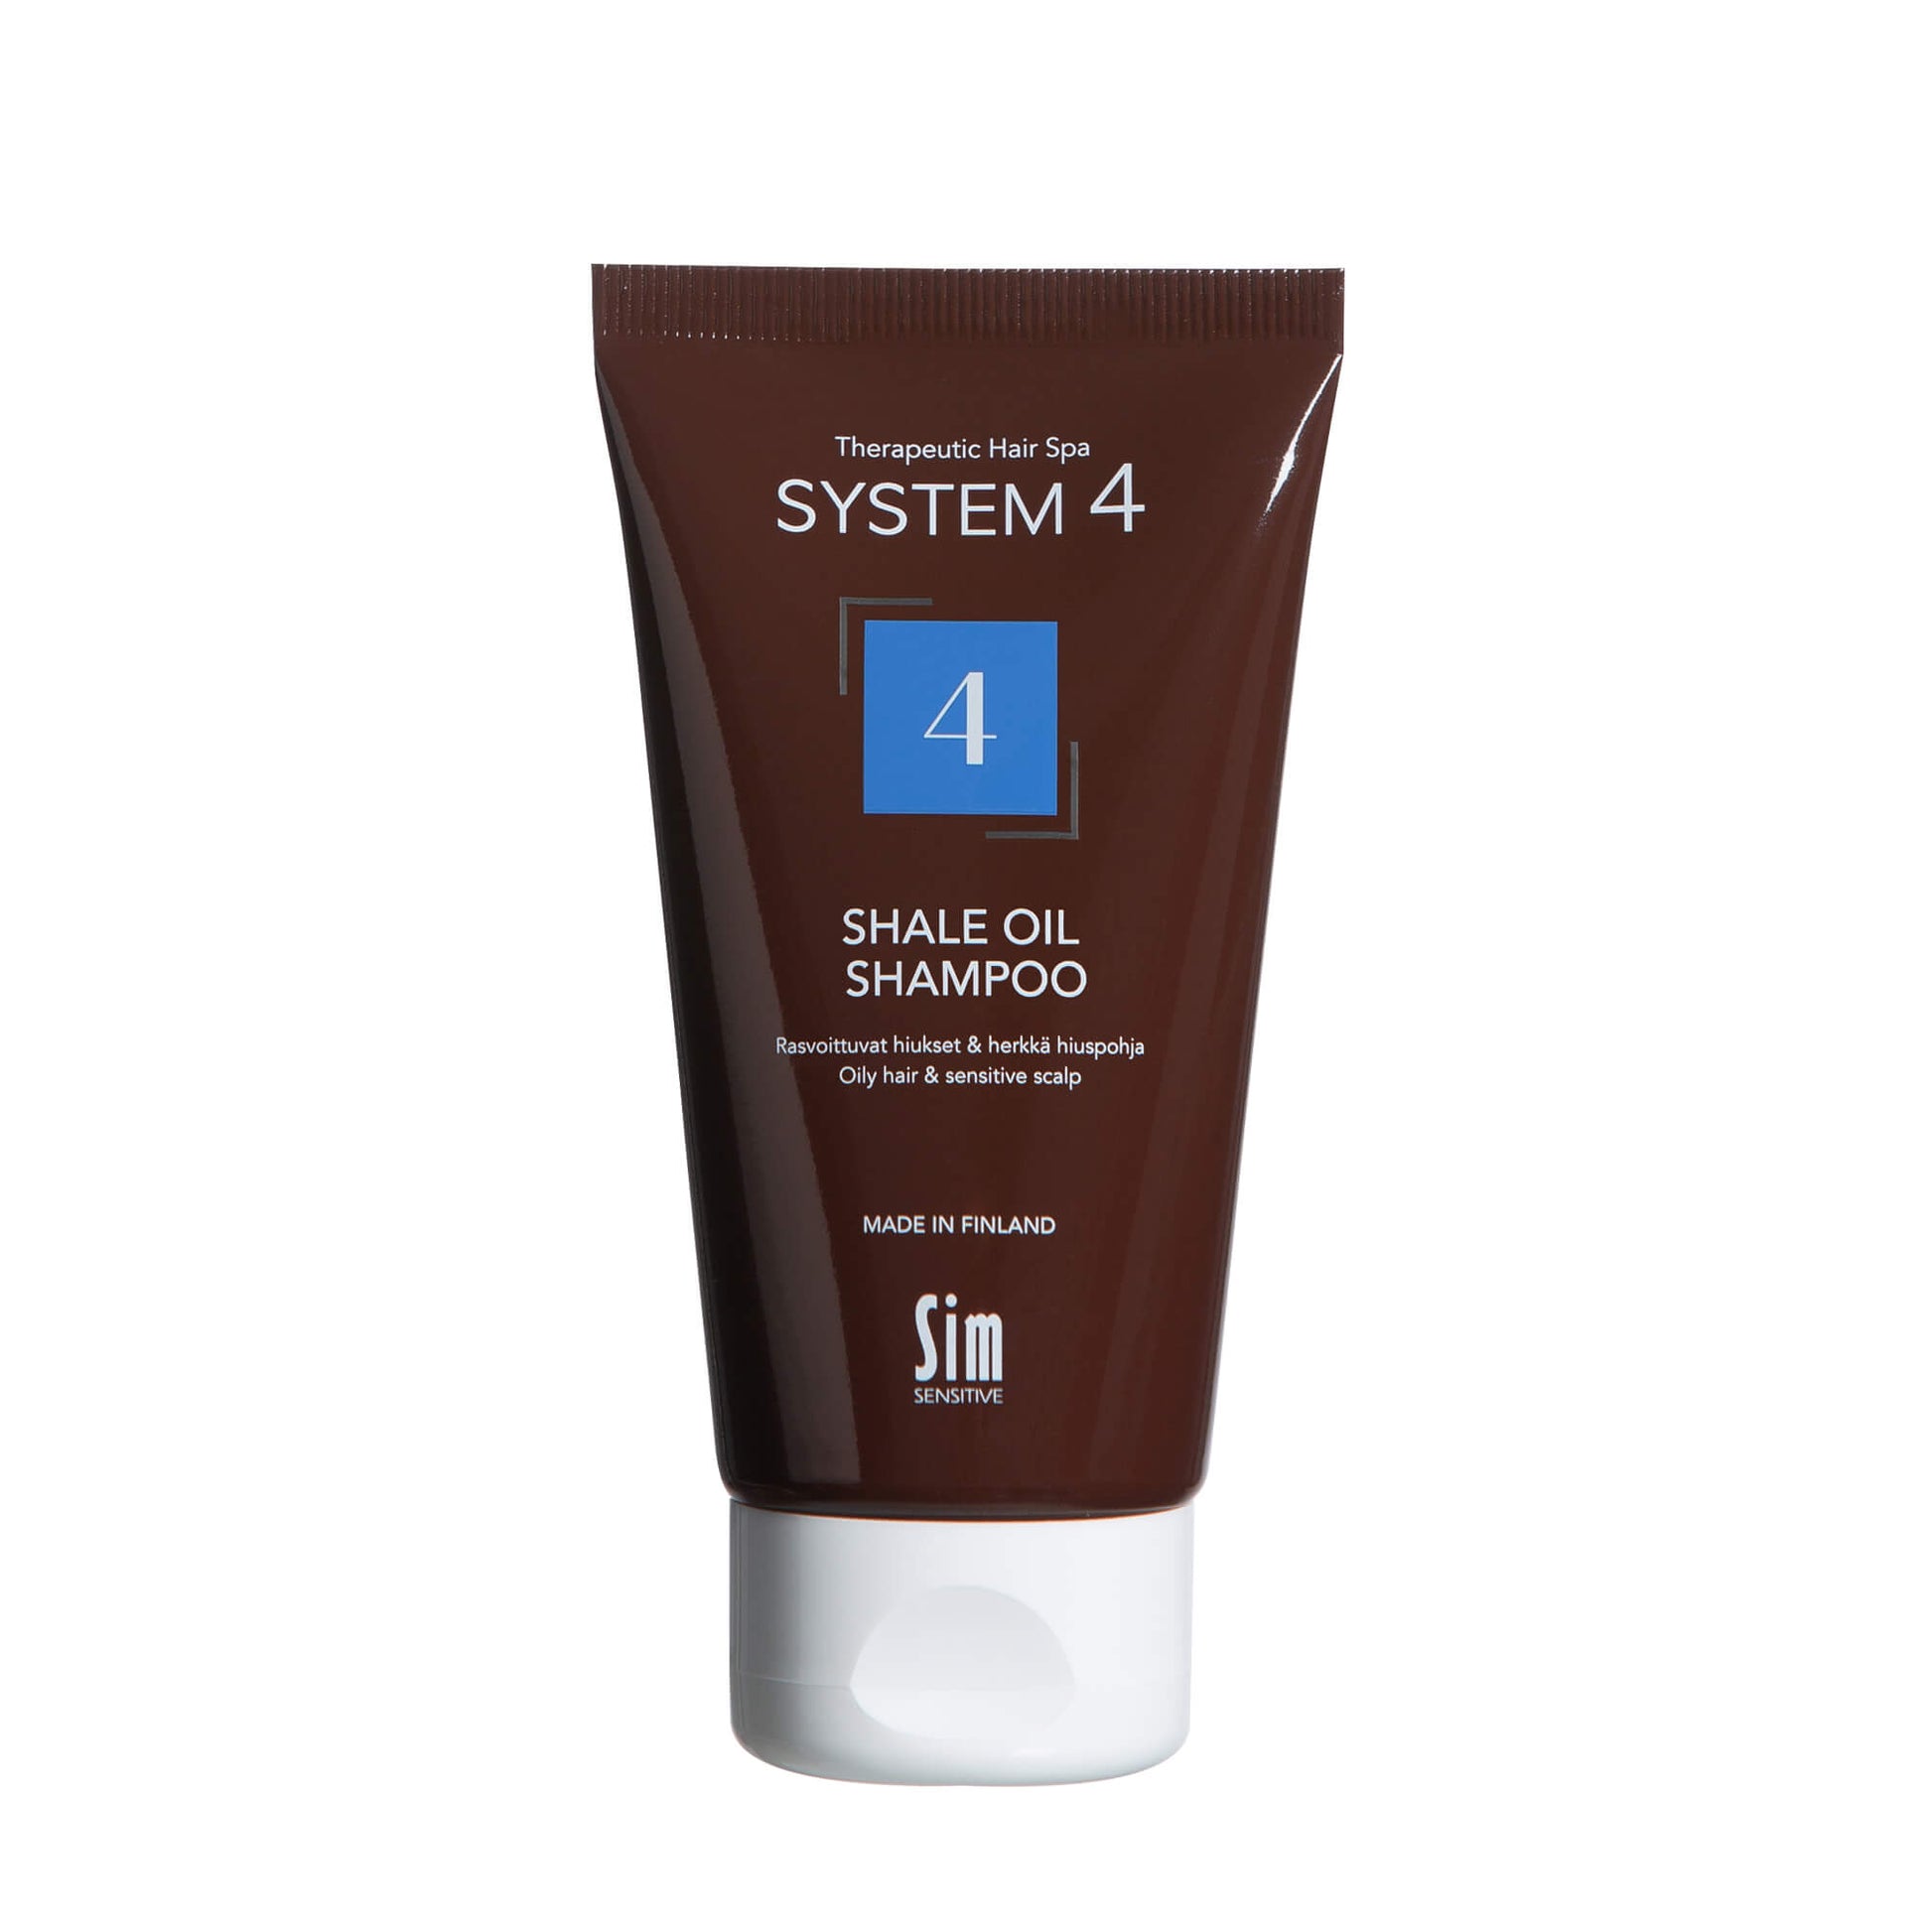 SYSTEM 4 Shale Oil Shampoo 4 ylirasvoittuville hiuksille ja herkälle hiuspohjalle 75 ml